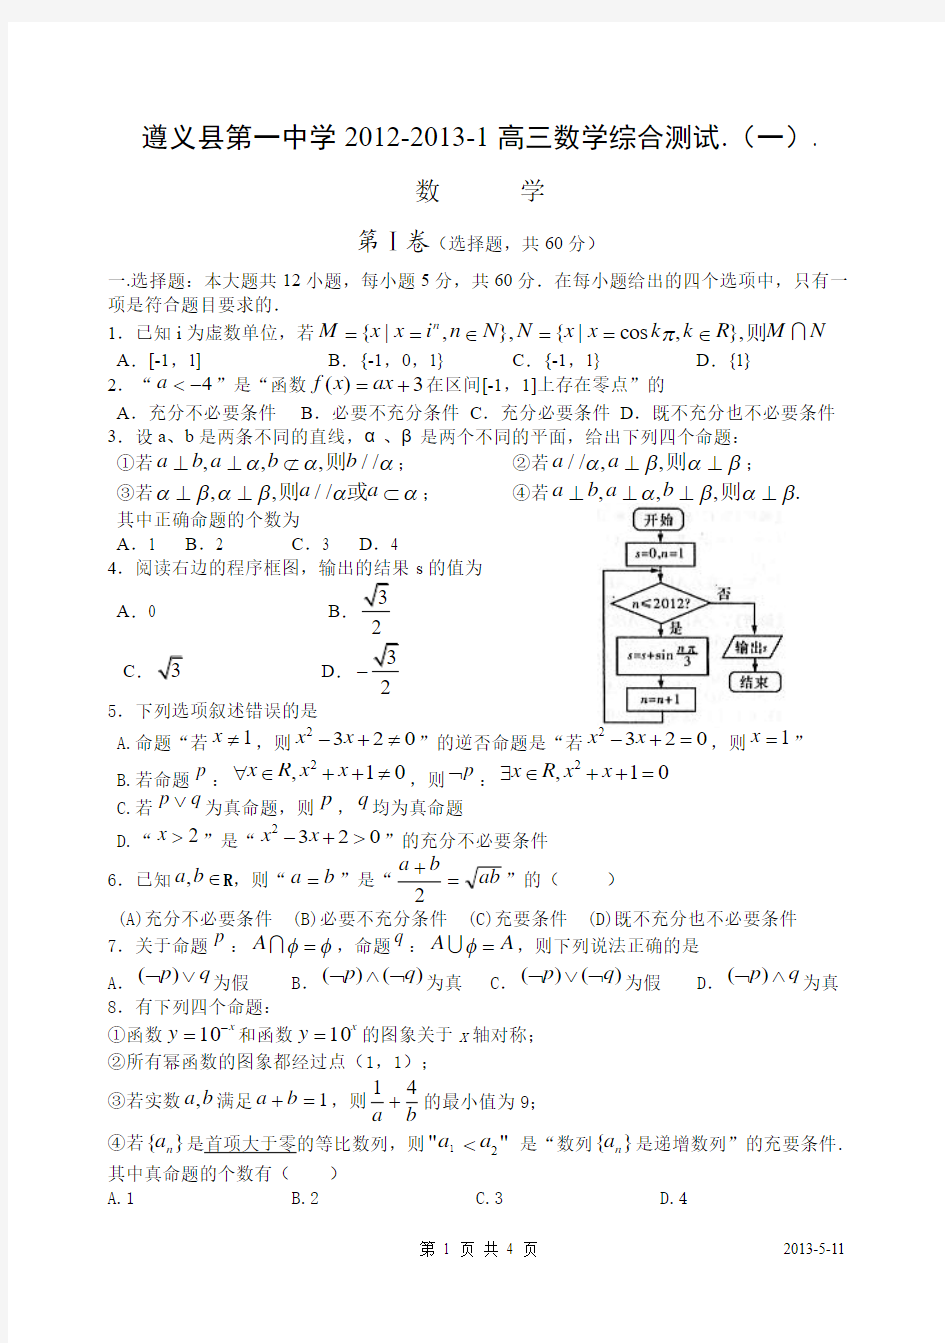 遵义县第一中学2012-2013-1高三数学综合测试.(一)